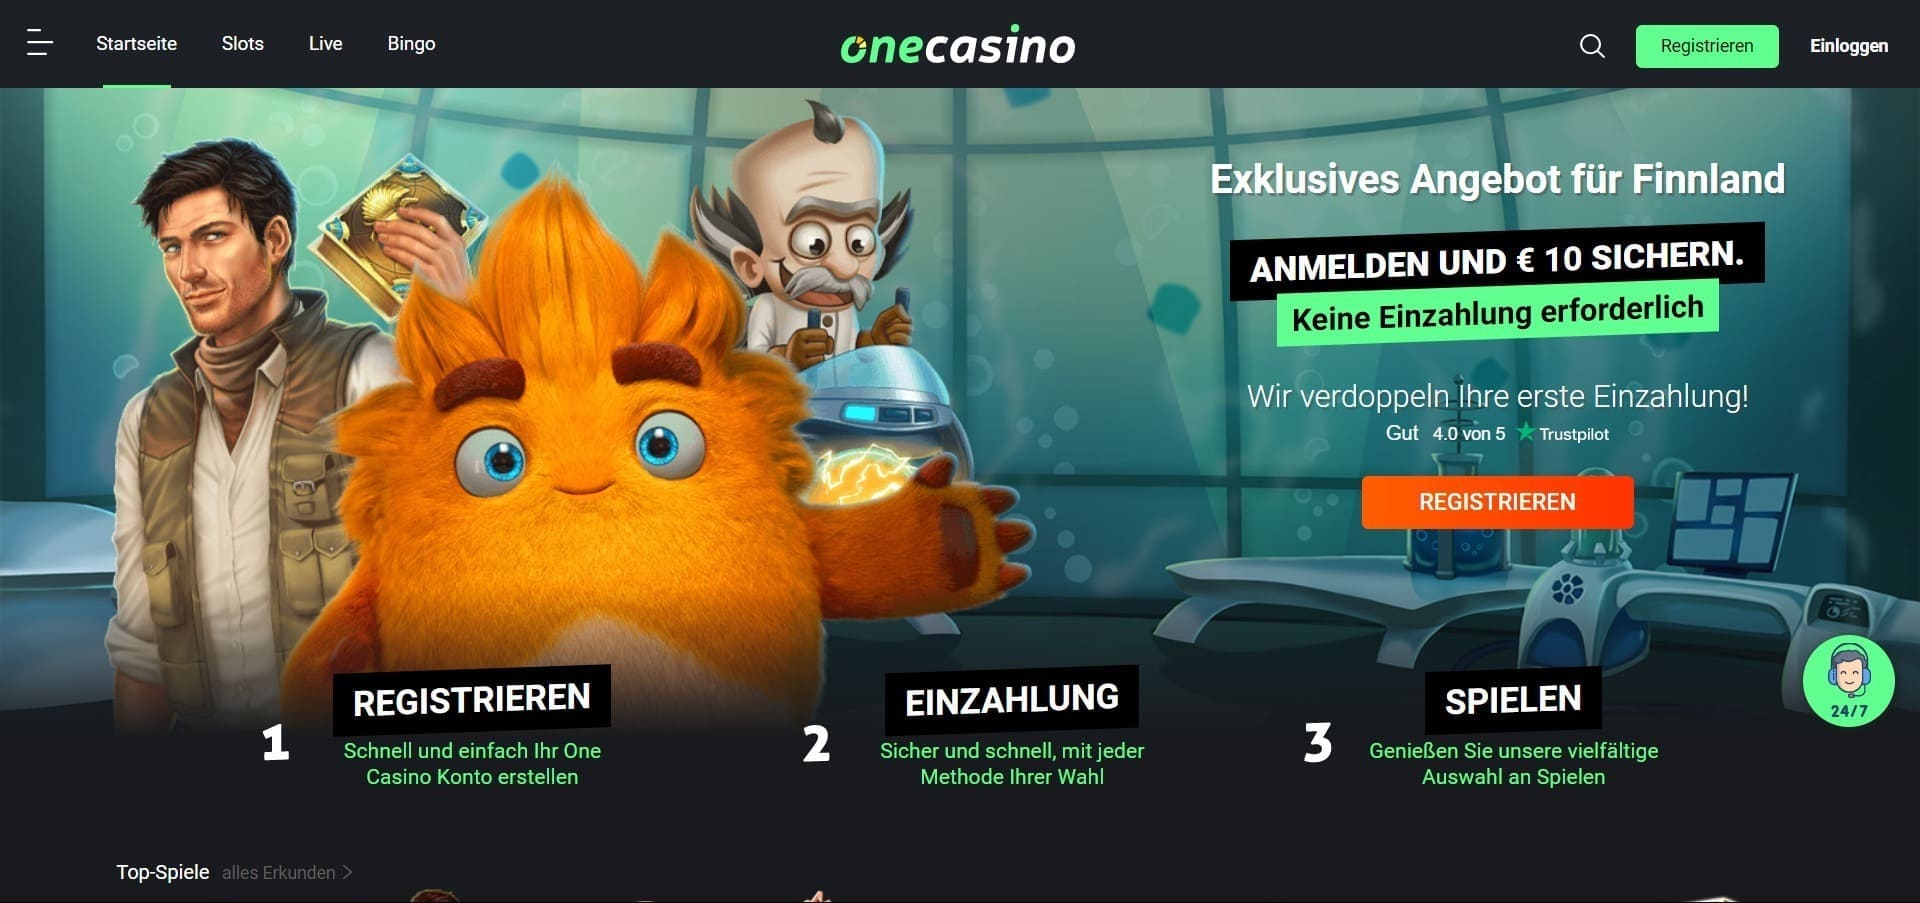 Offizielle Website der One Casino